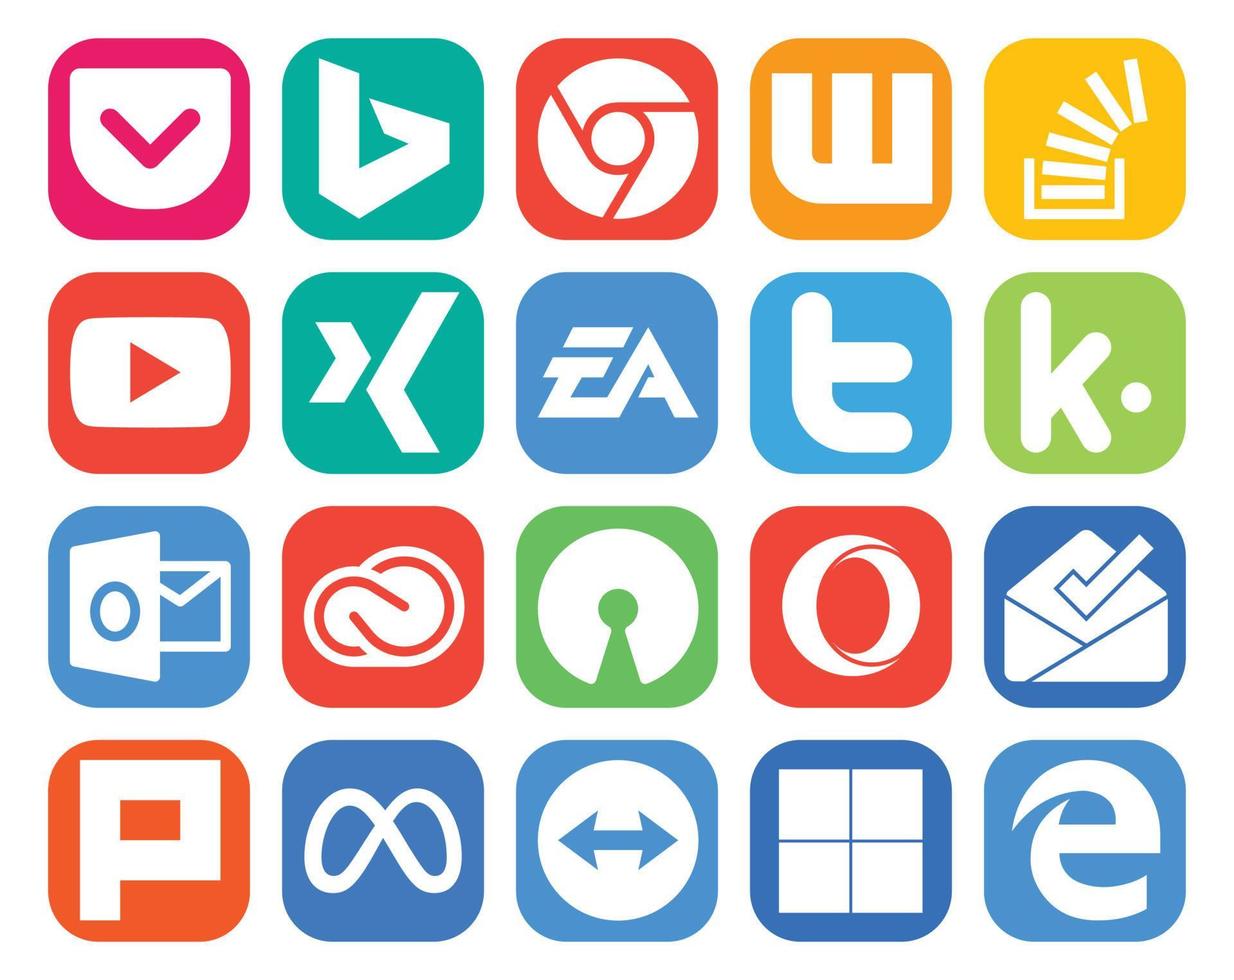 20 Symbolpakete für soziale Medien, einschließlich Ausblick, Tweet, Youtube, Twitter, ea vektor